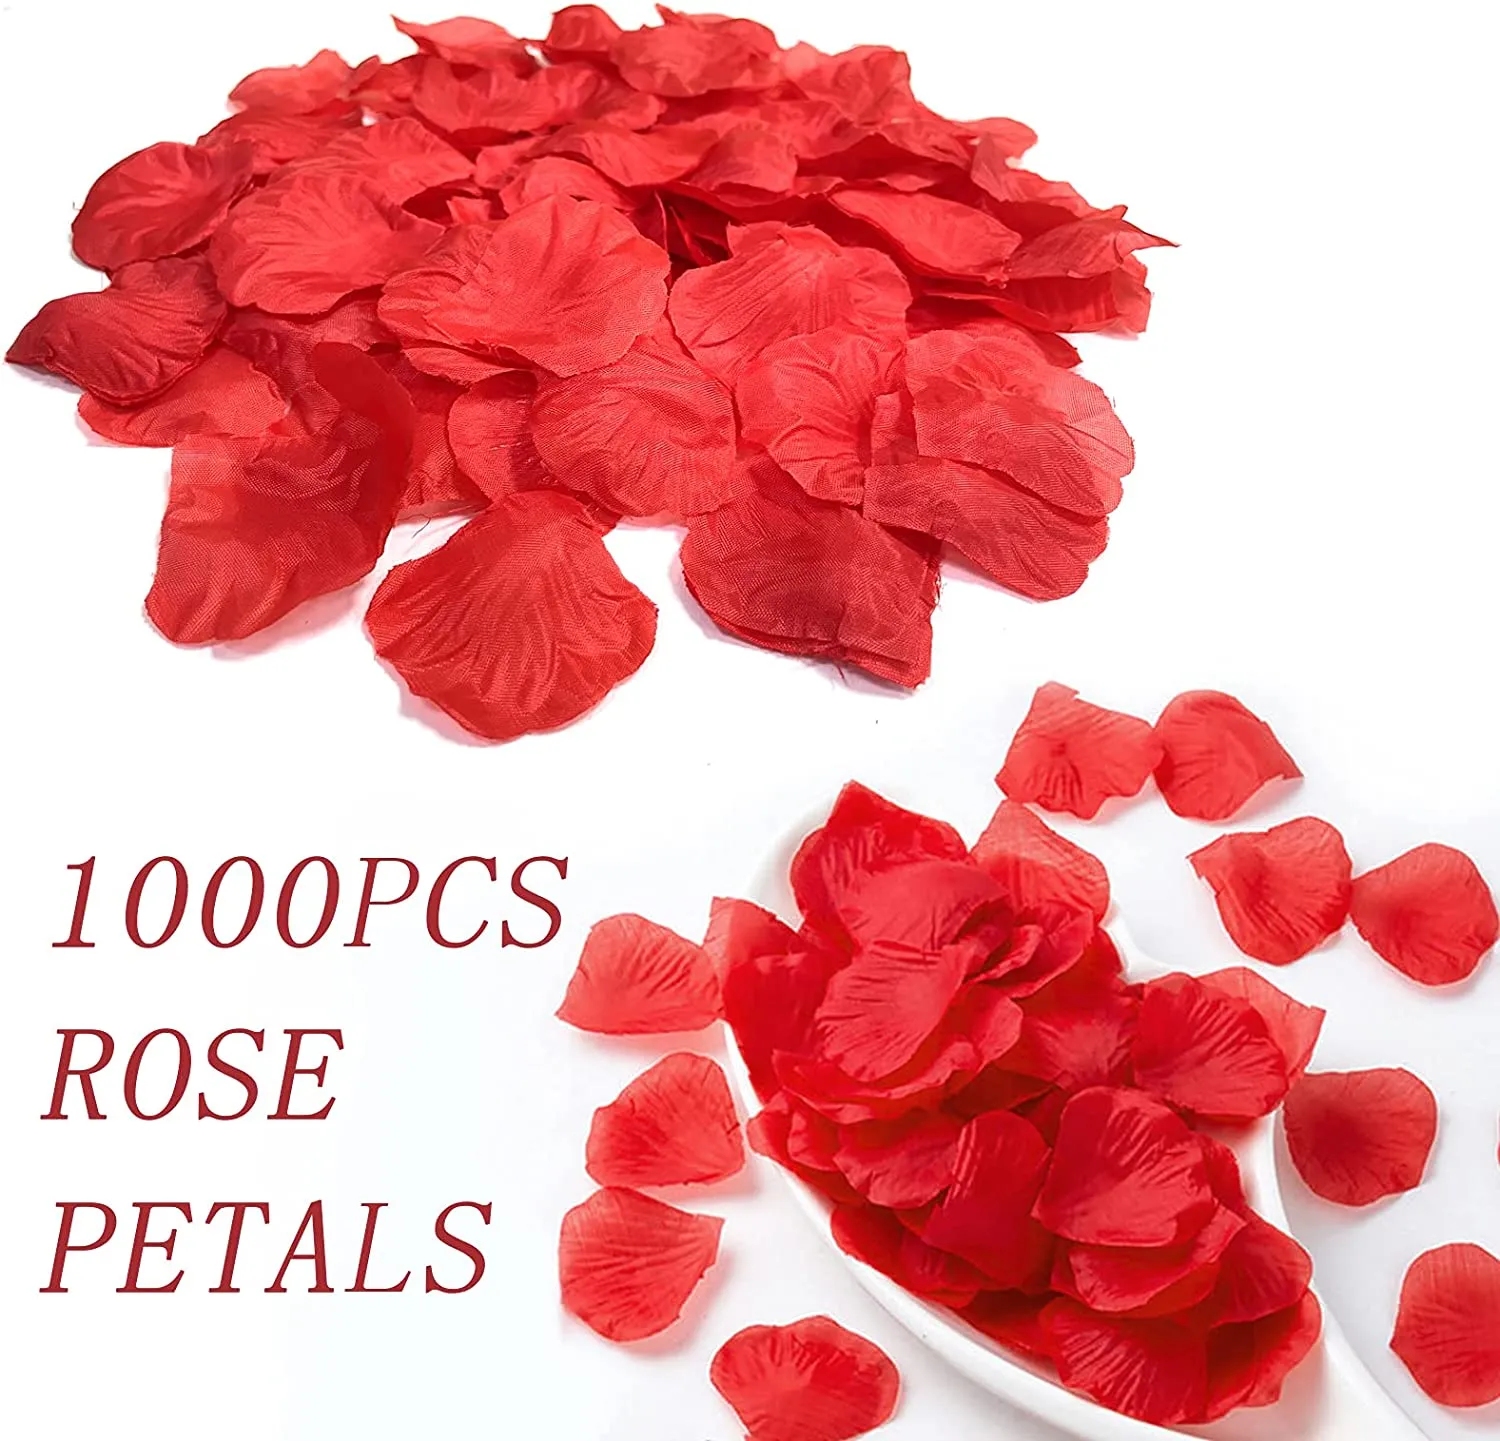 1000 sztuk/partia jedwabne płatki róż płatki róż dekoracja na romantyczną noc, ślub, wydarzenie, impreza, dekoracja, dekoracja wesele